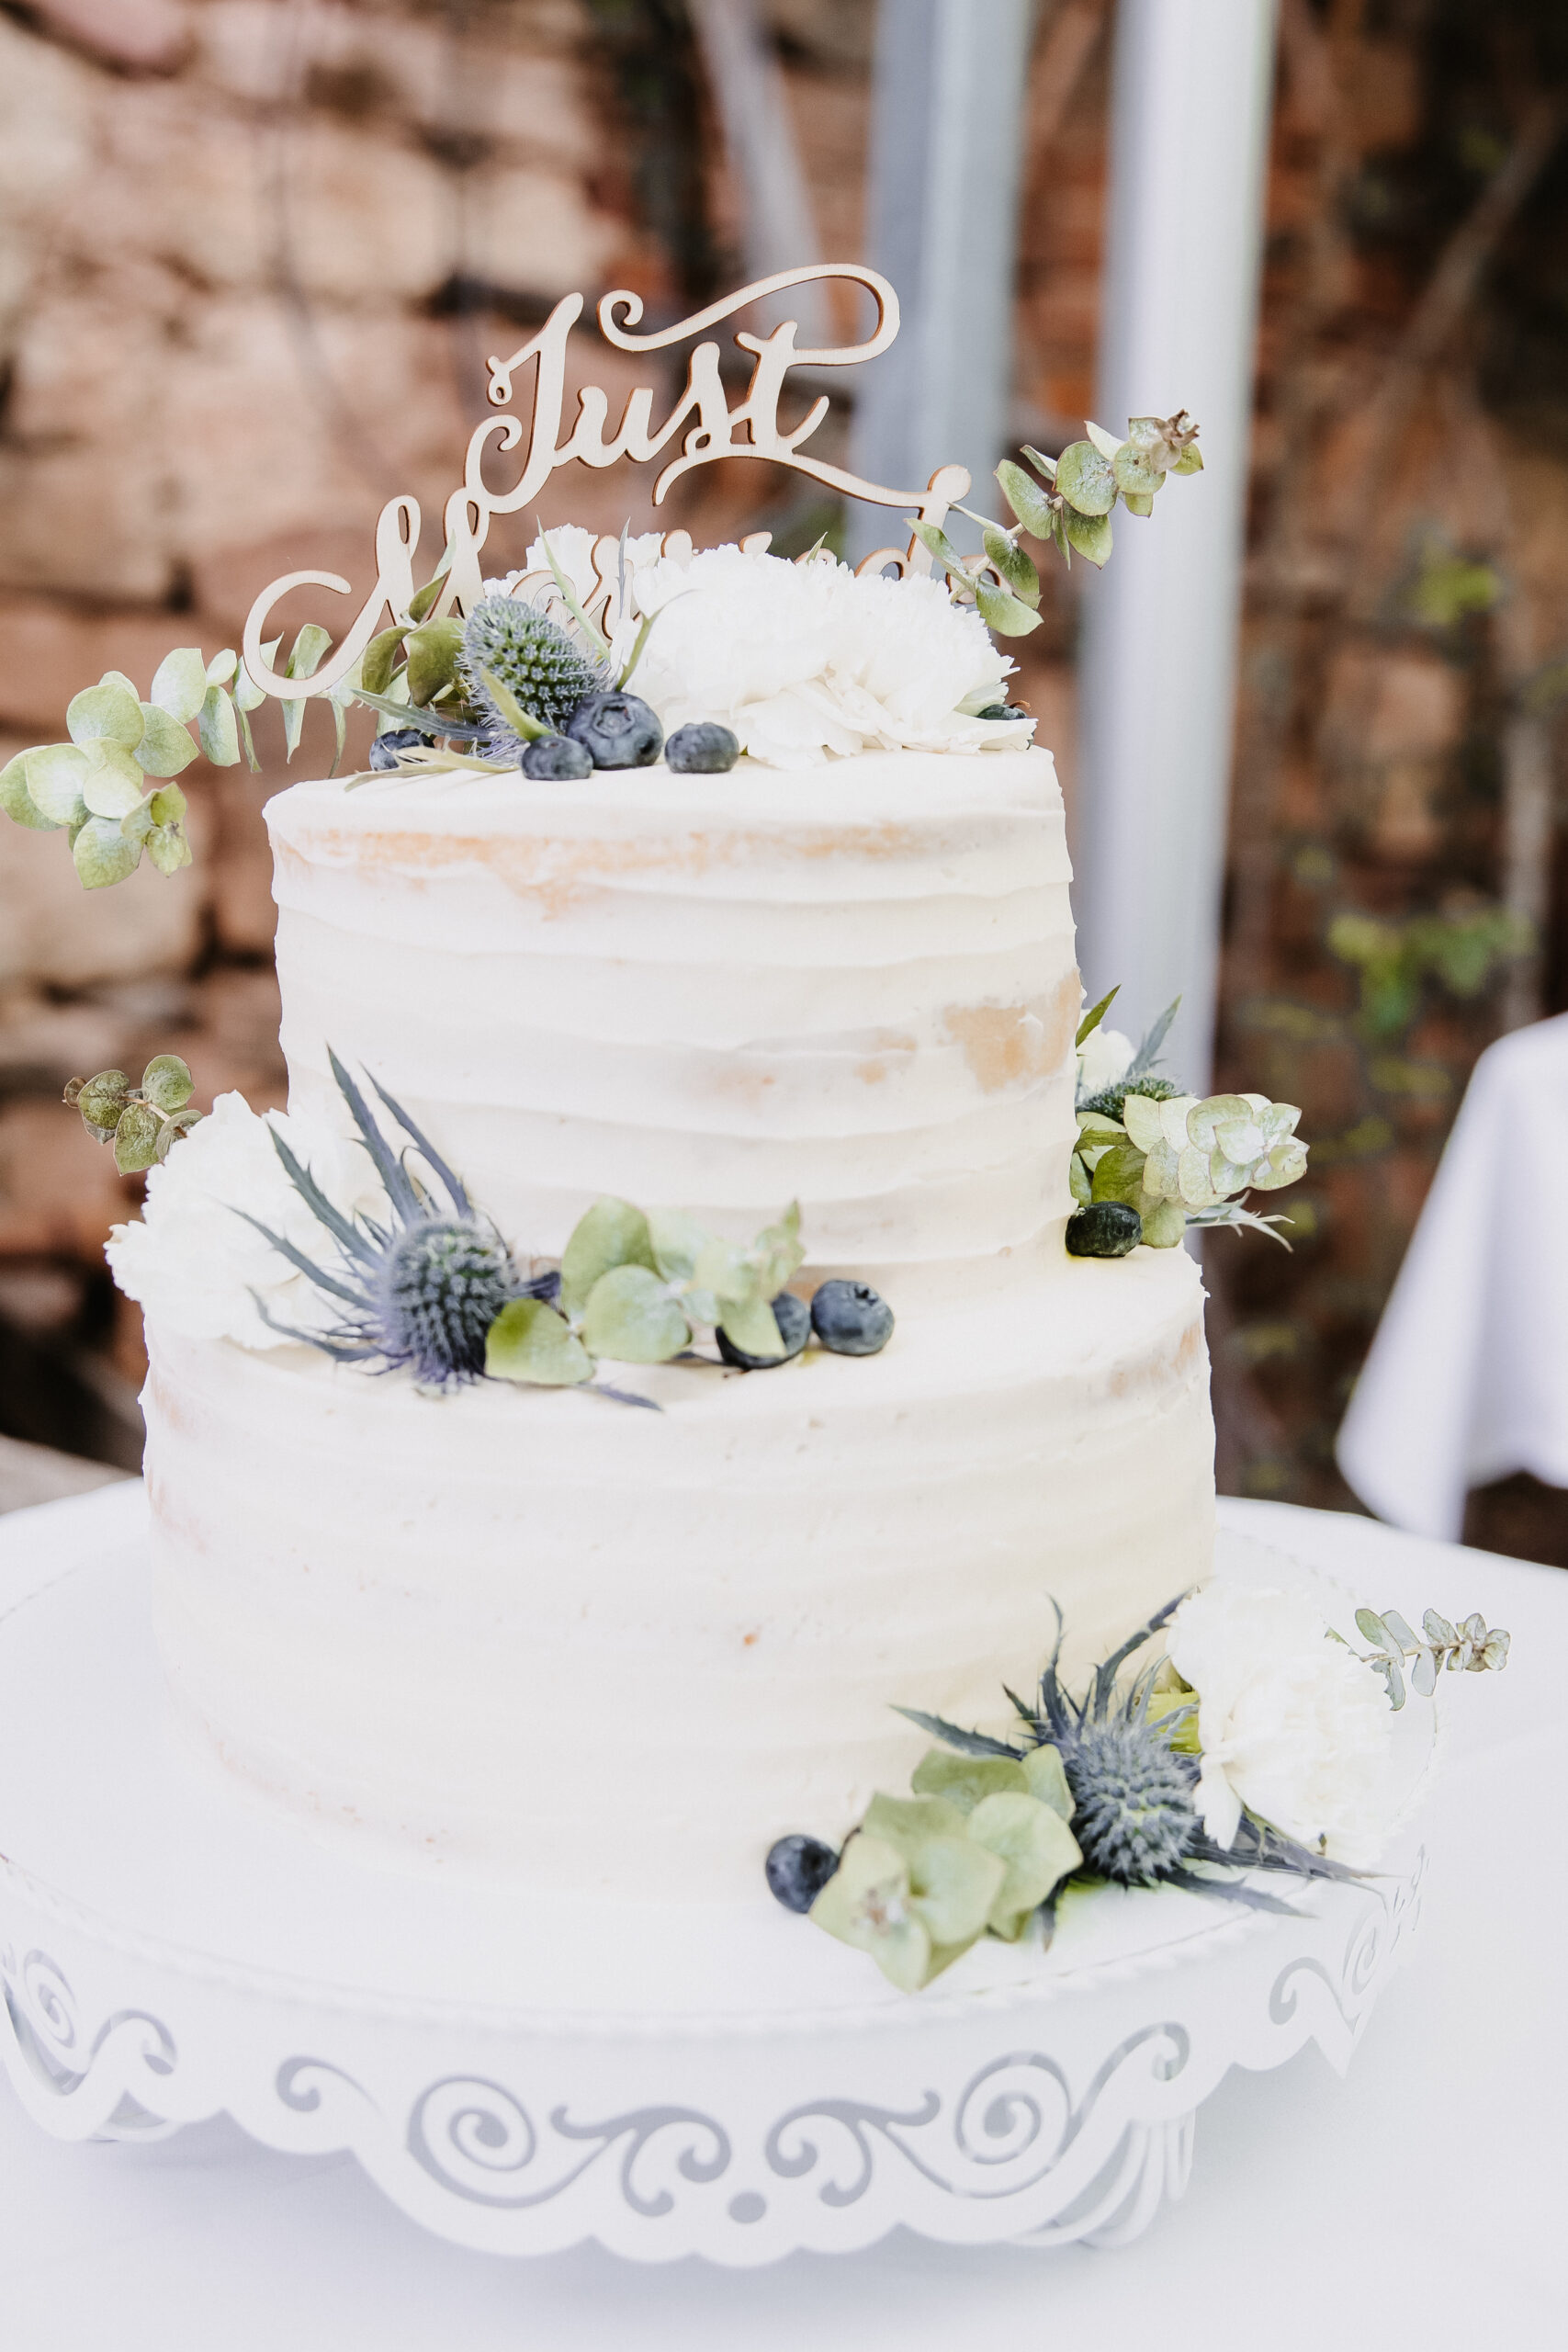 Detailaufnahmen der Hochzeitstorte welche zweiteilig ist mit Heidelbeeren und Trockenblumen sowie einem Just Married Schild.